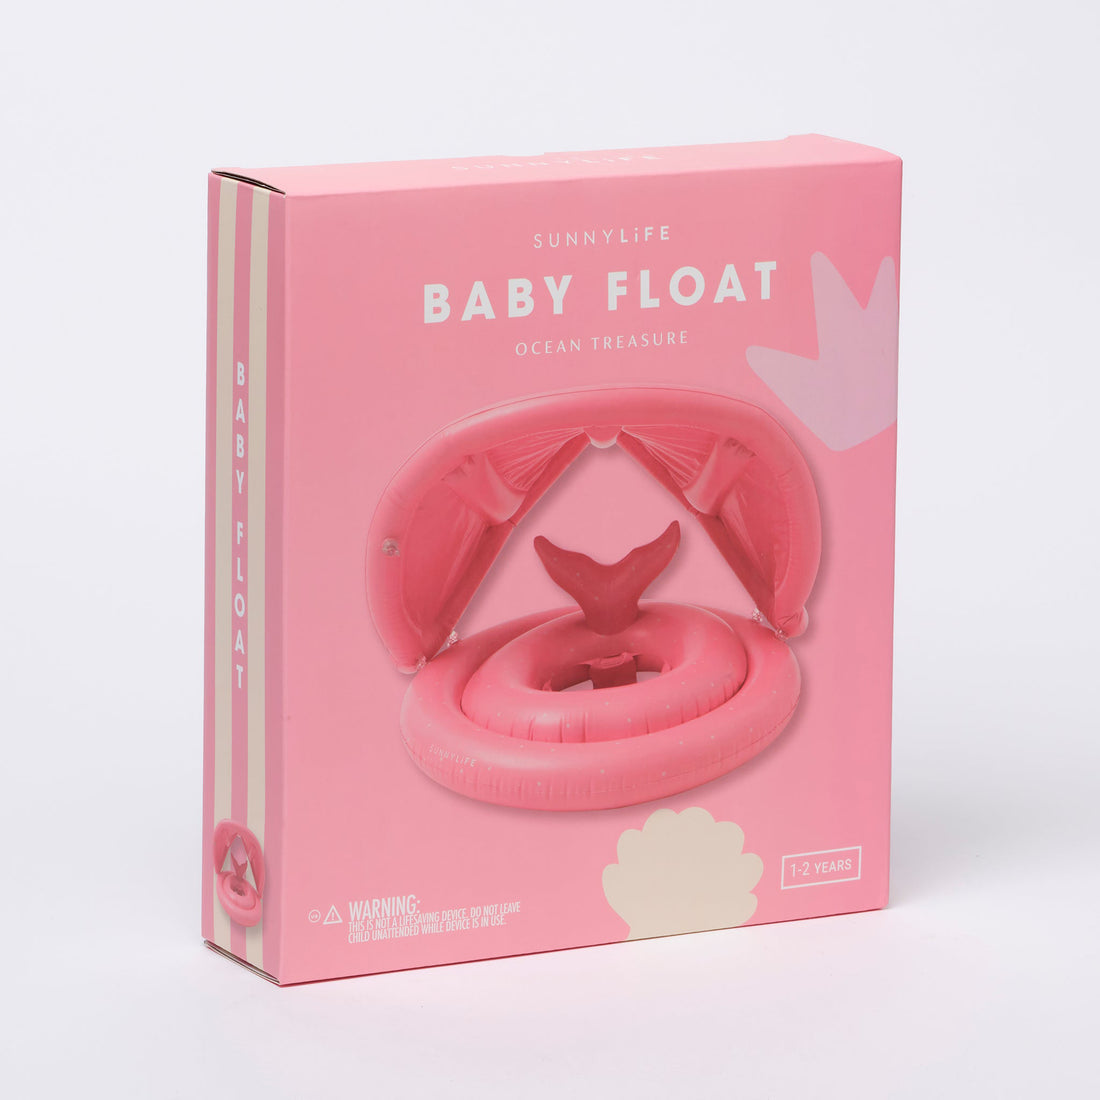 sunnylife-baby-float-ocean-treasure-rose-sunl-s3lbabot- (7)